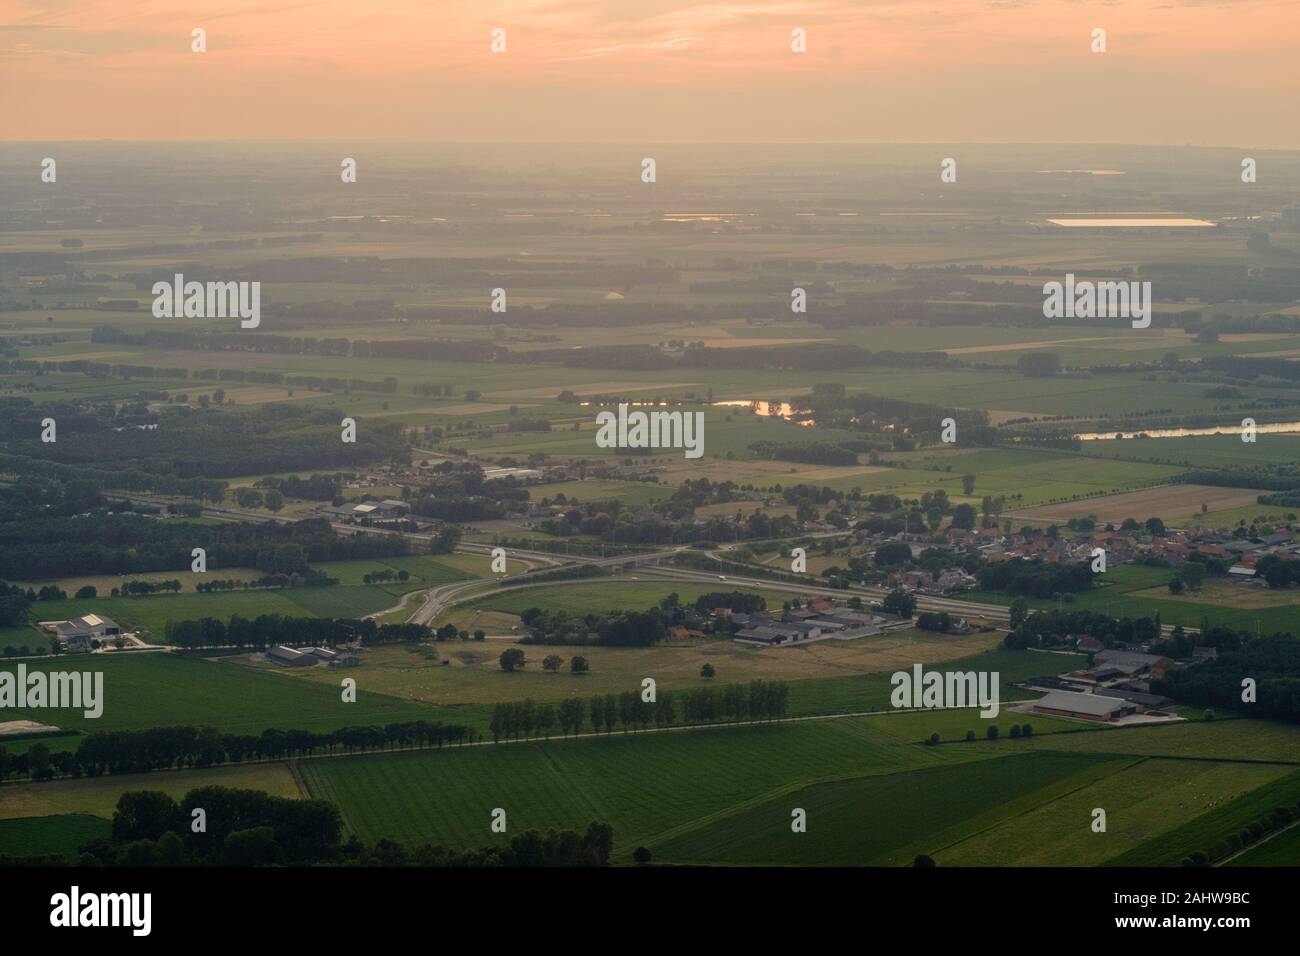 Une photo aérienne montre la sortie d'autoroute de la E34 à Moerbeke, une municipalité dans la province d'East-Flander avec un environnement rural.. Banque D'Images